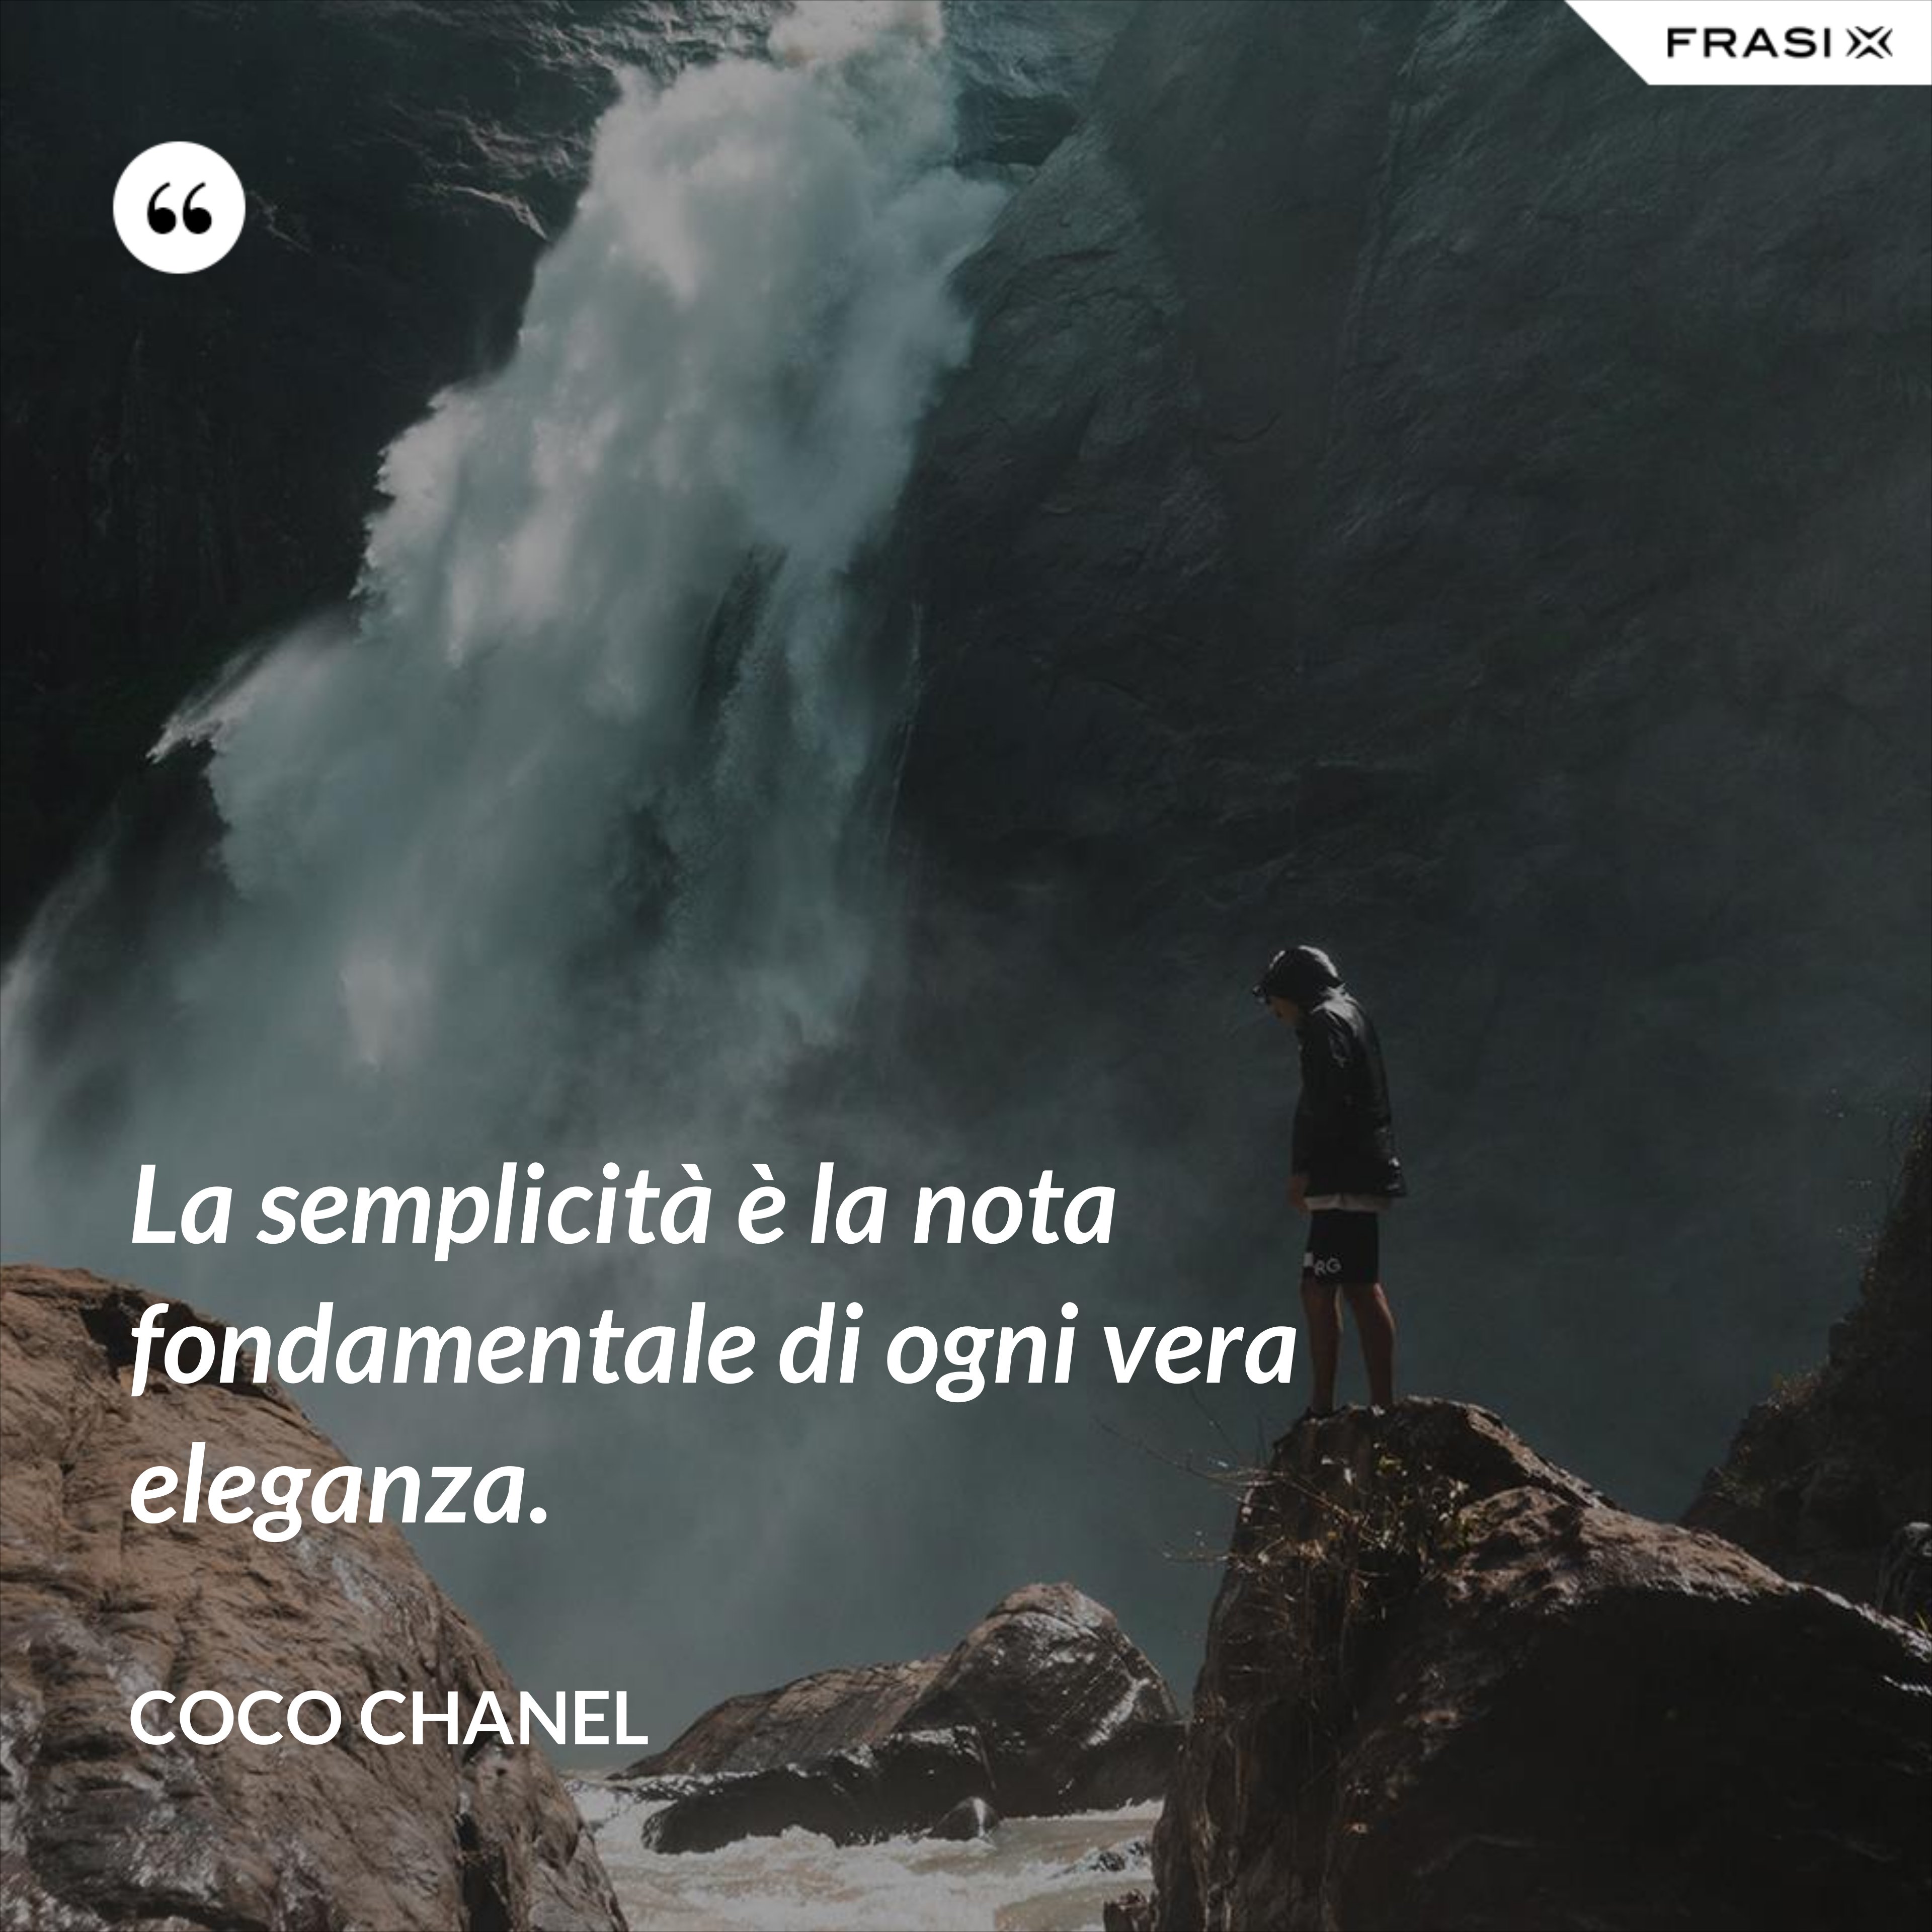 La semplicità è la nota fondamentale di ogni vera eleganza. - Coco Chanel